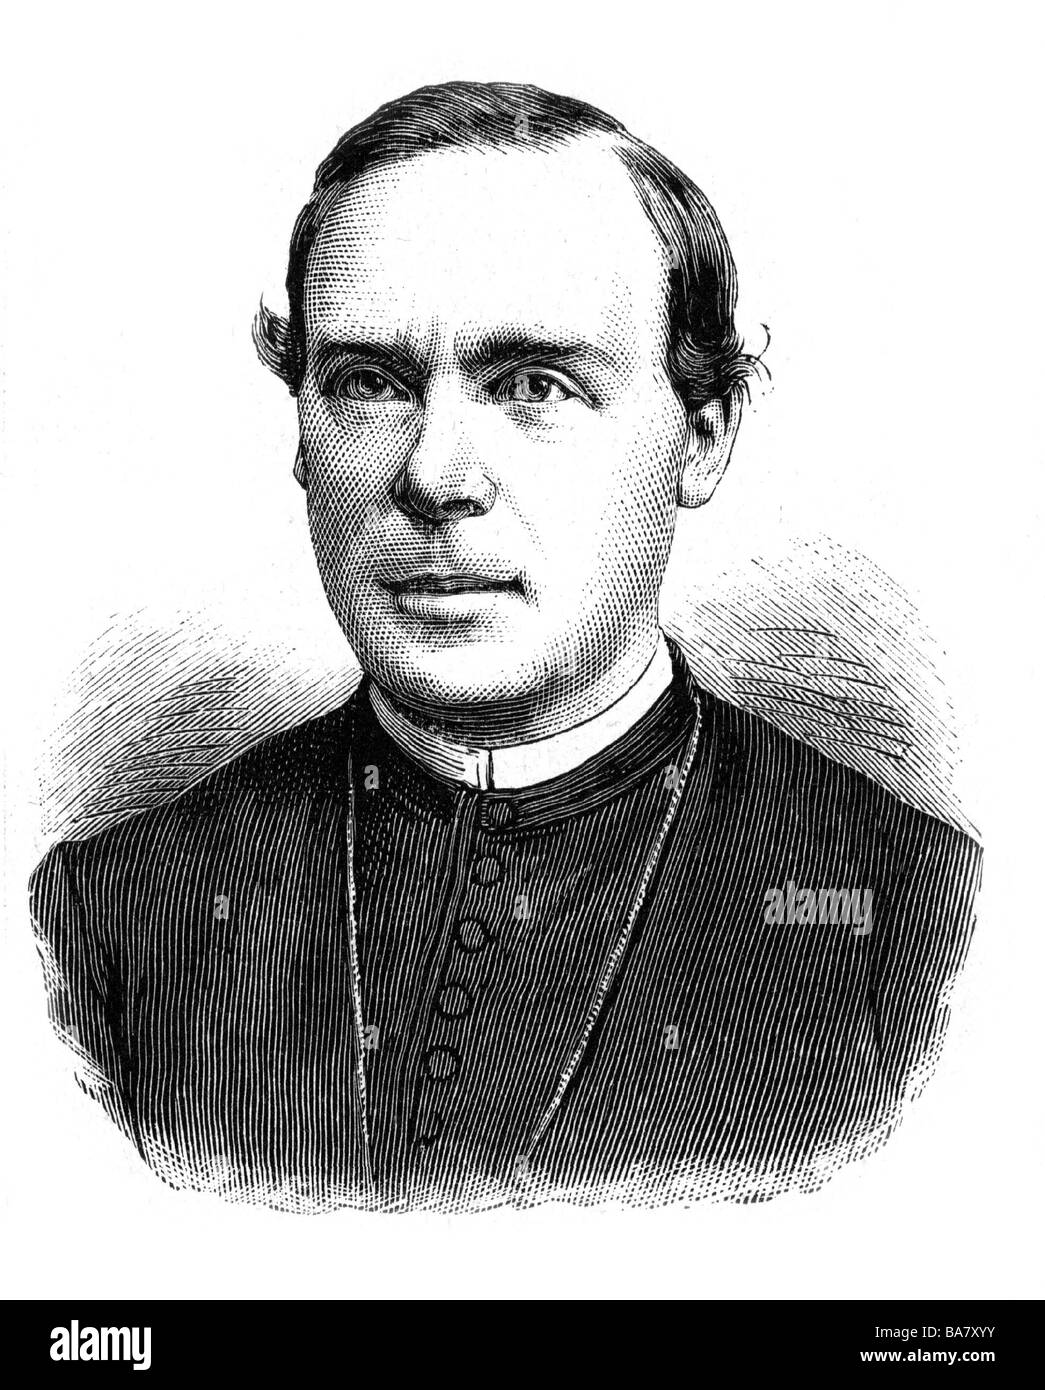 Kopp, Georg von, 25.7.1837 - 4.3.1914, German Catholic cleric, Bishop of Fulda, Prince-Bishop of Breslau, confidant of Bismarck, wood engraing, Stock Photo